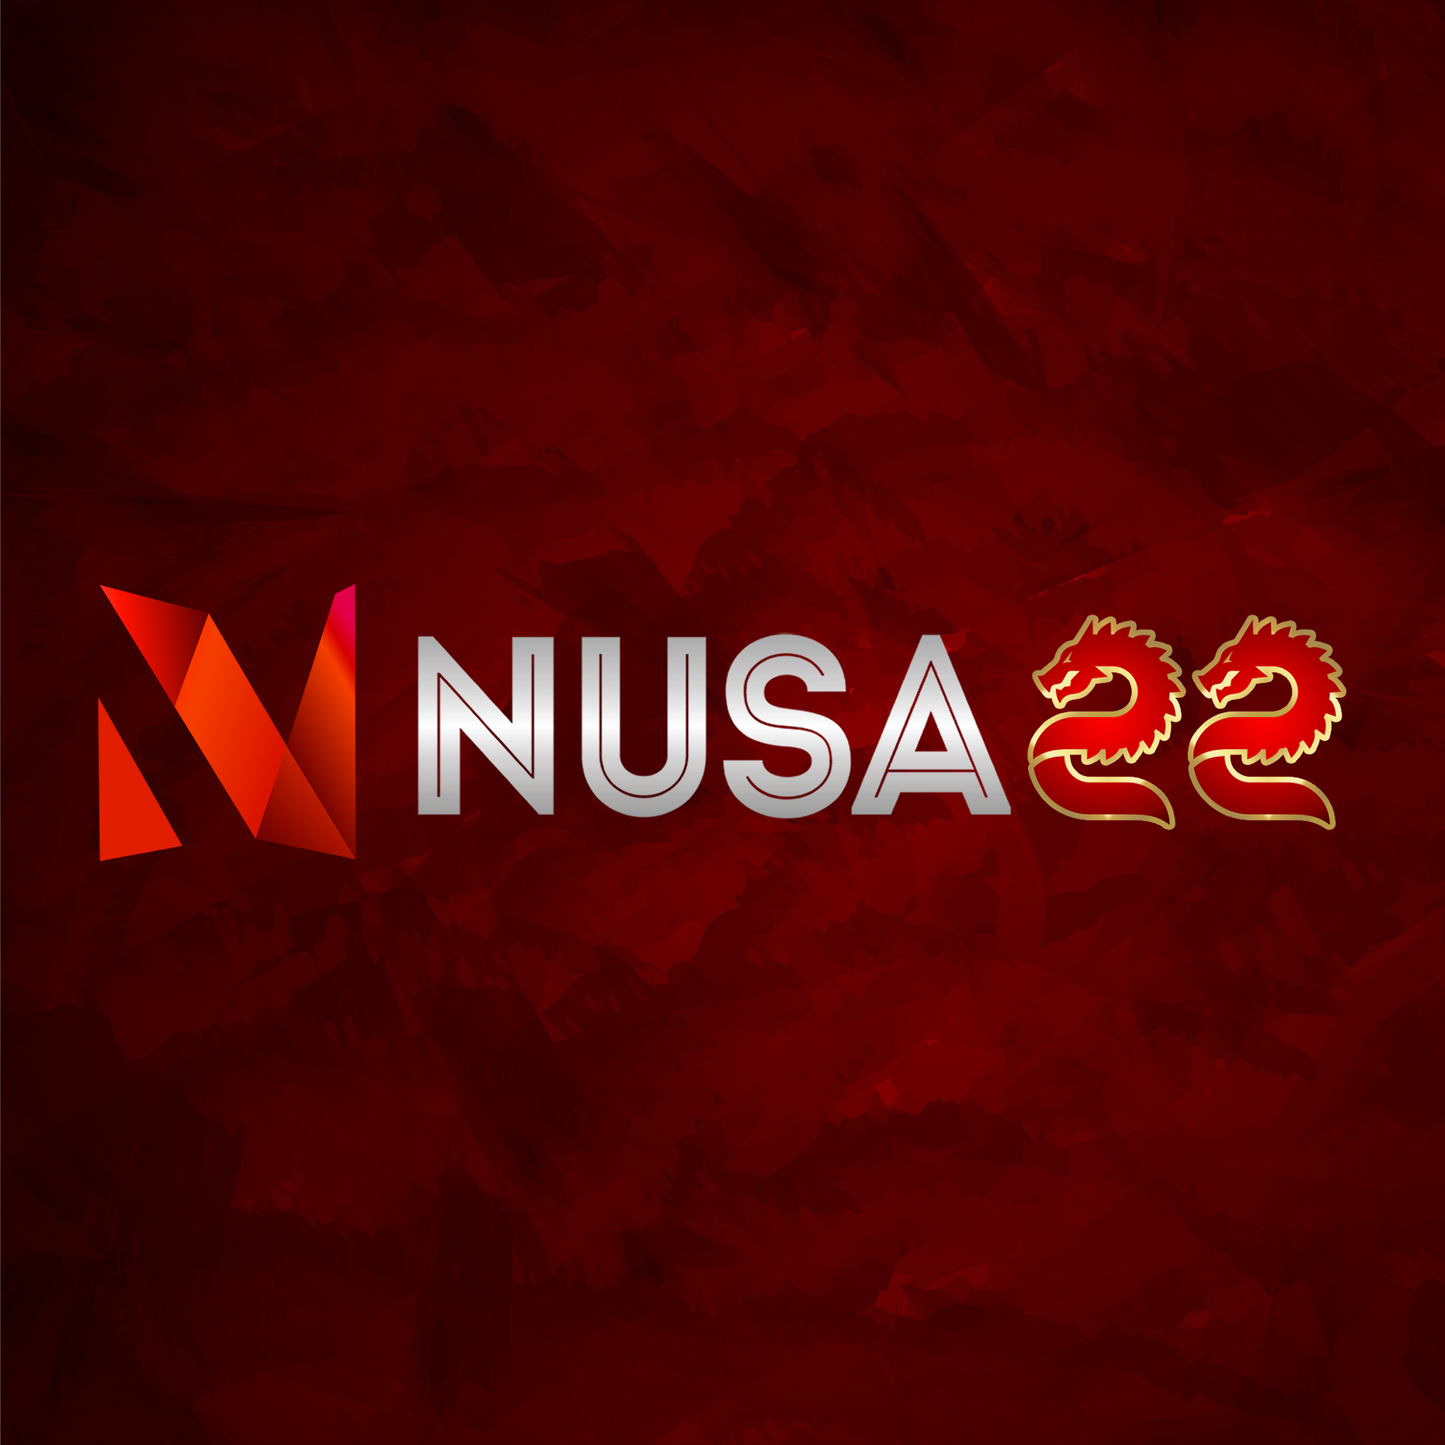 NUSA22 - Slot Online Tergacor Mudah Menang